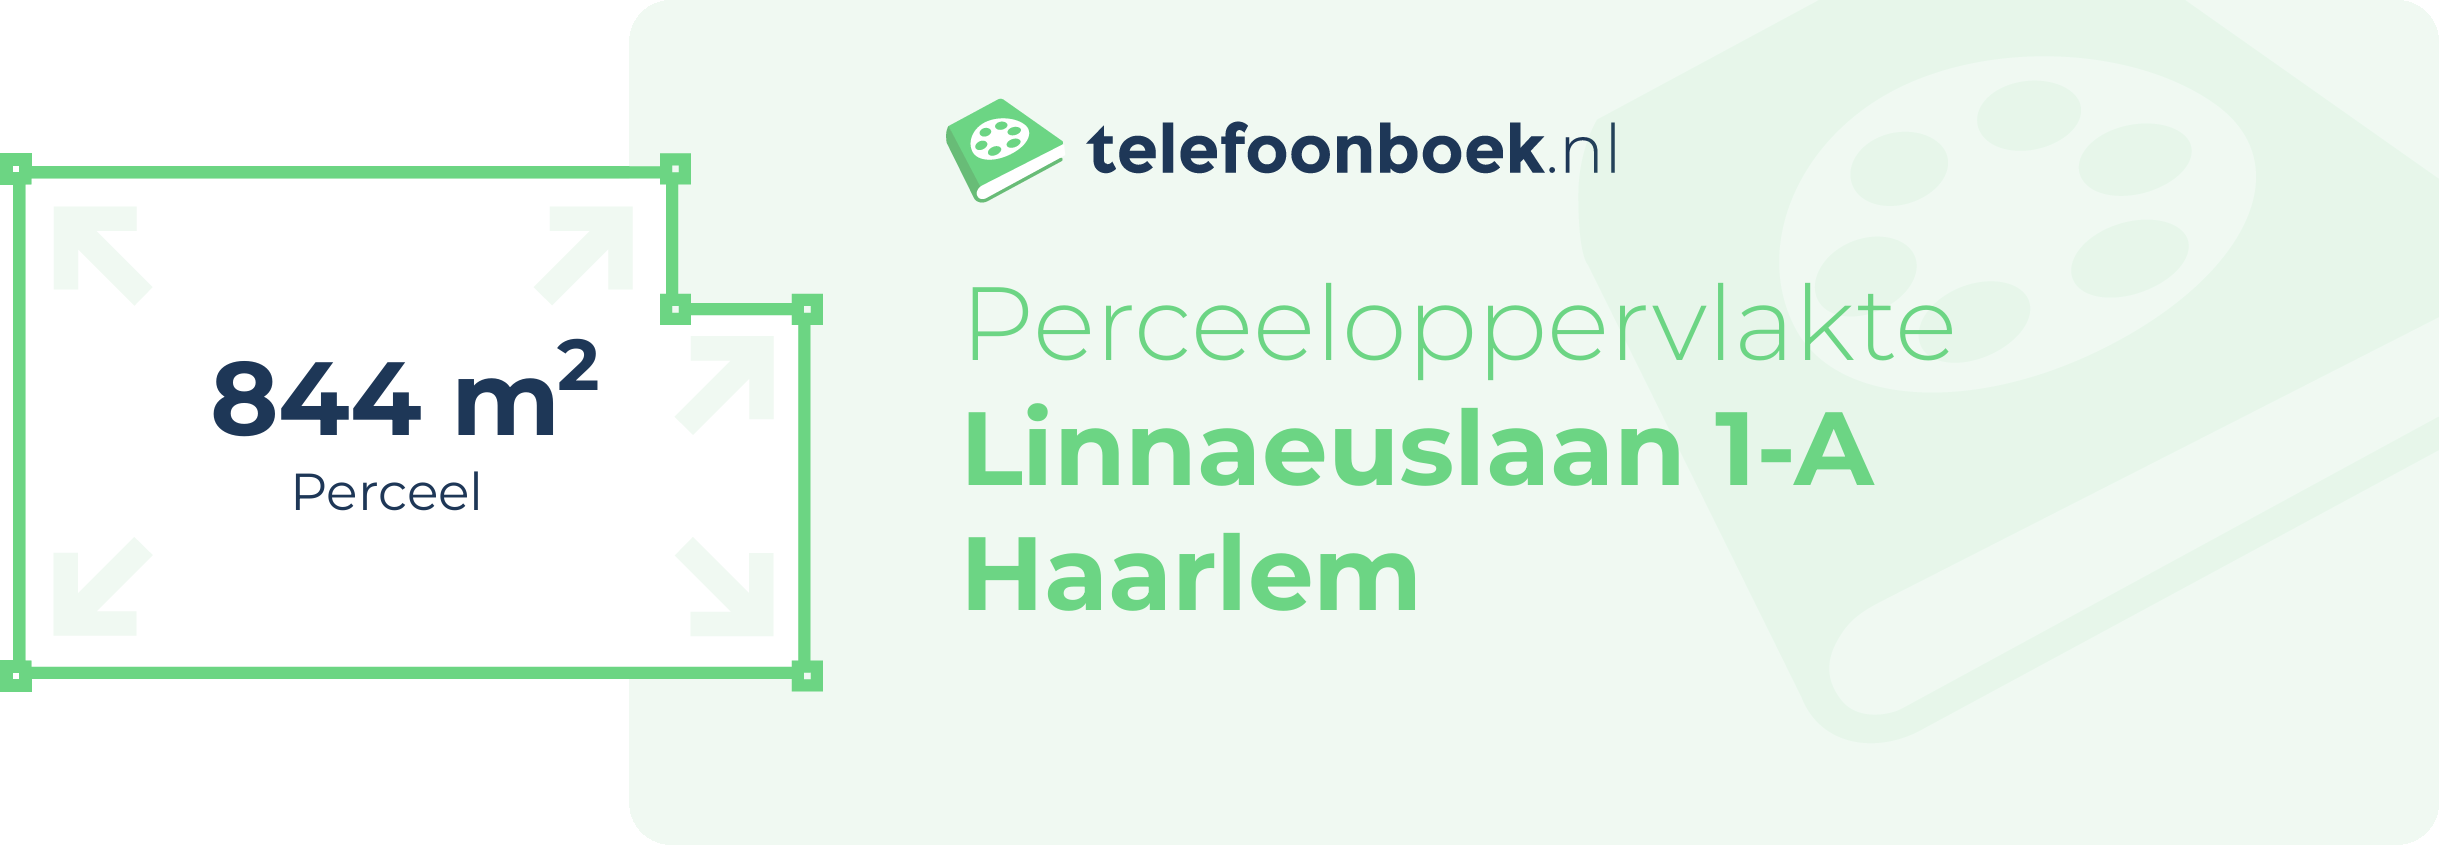 Perceeloppervlakte Linnaeuslaan 1-A Haarlem